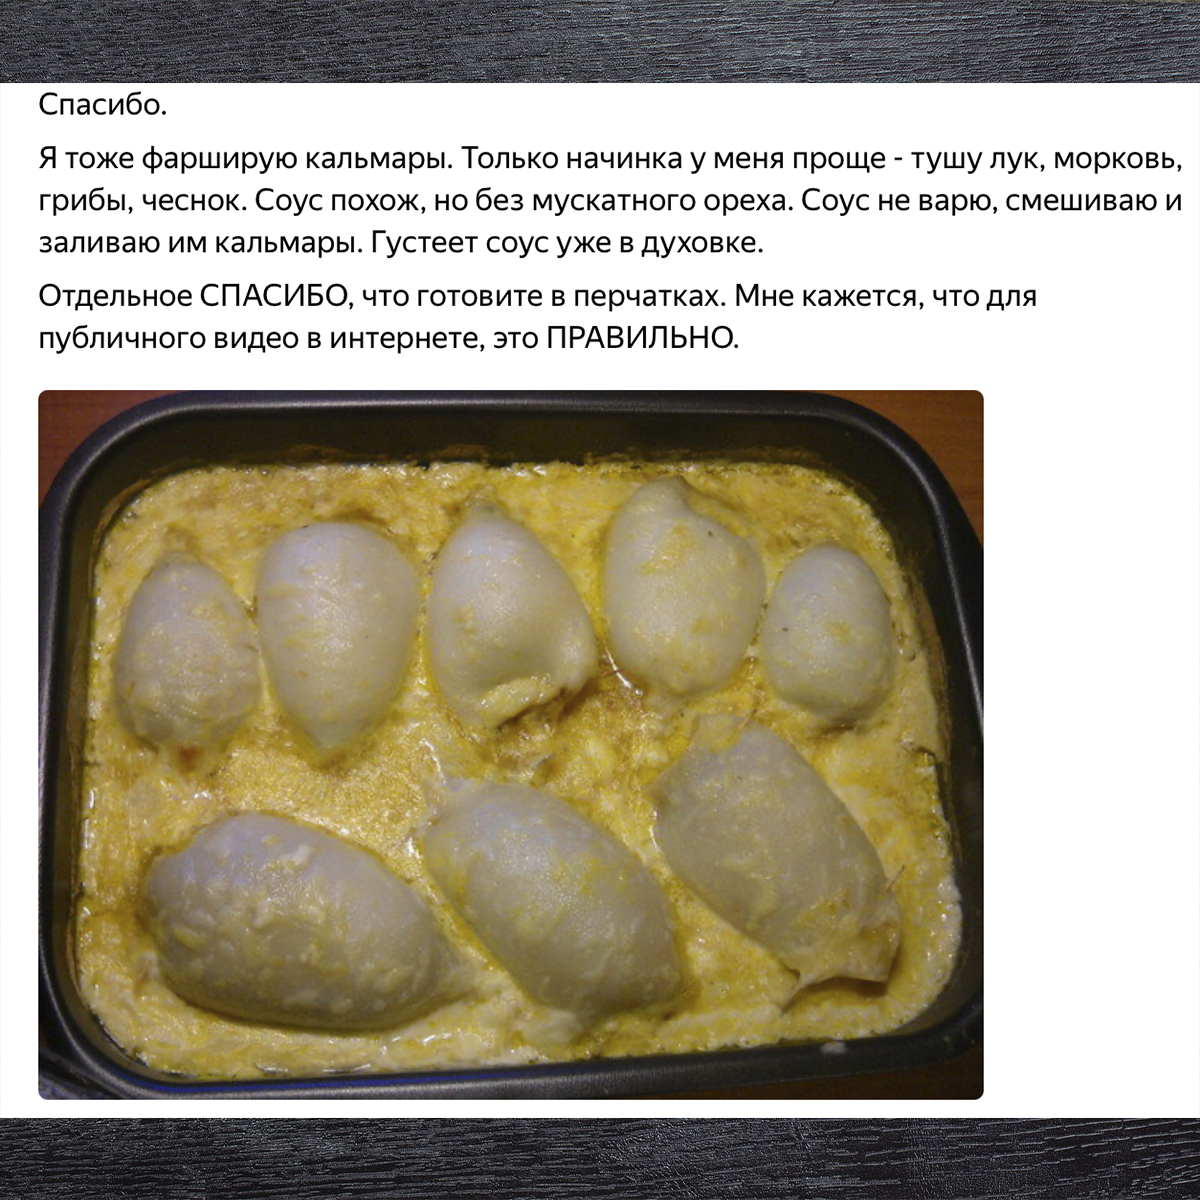 Кальмары фаршированные в духовке - 10 рецептов с фото пошагово